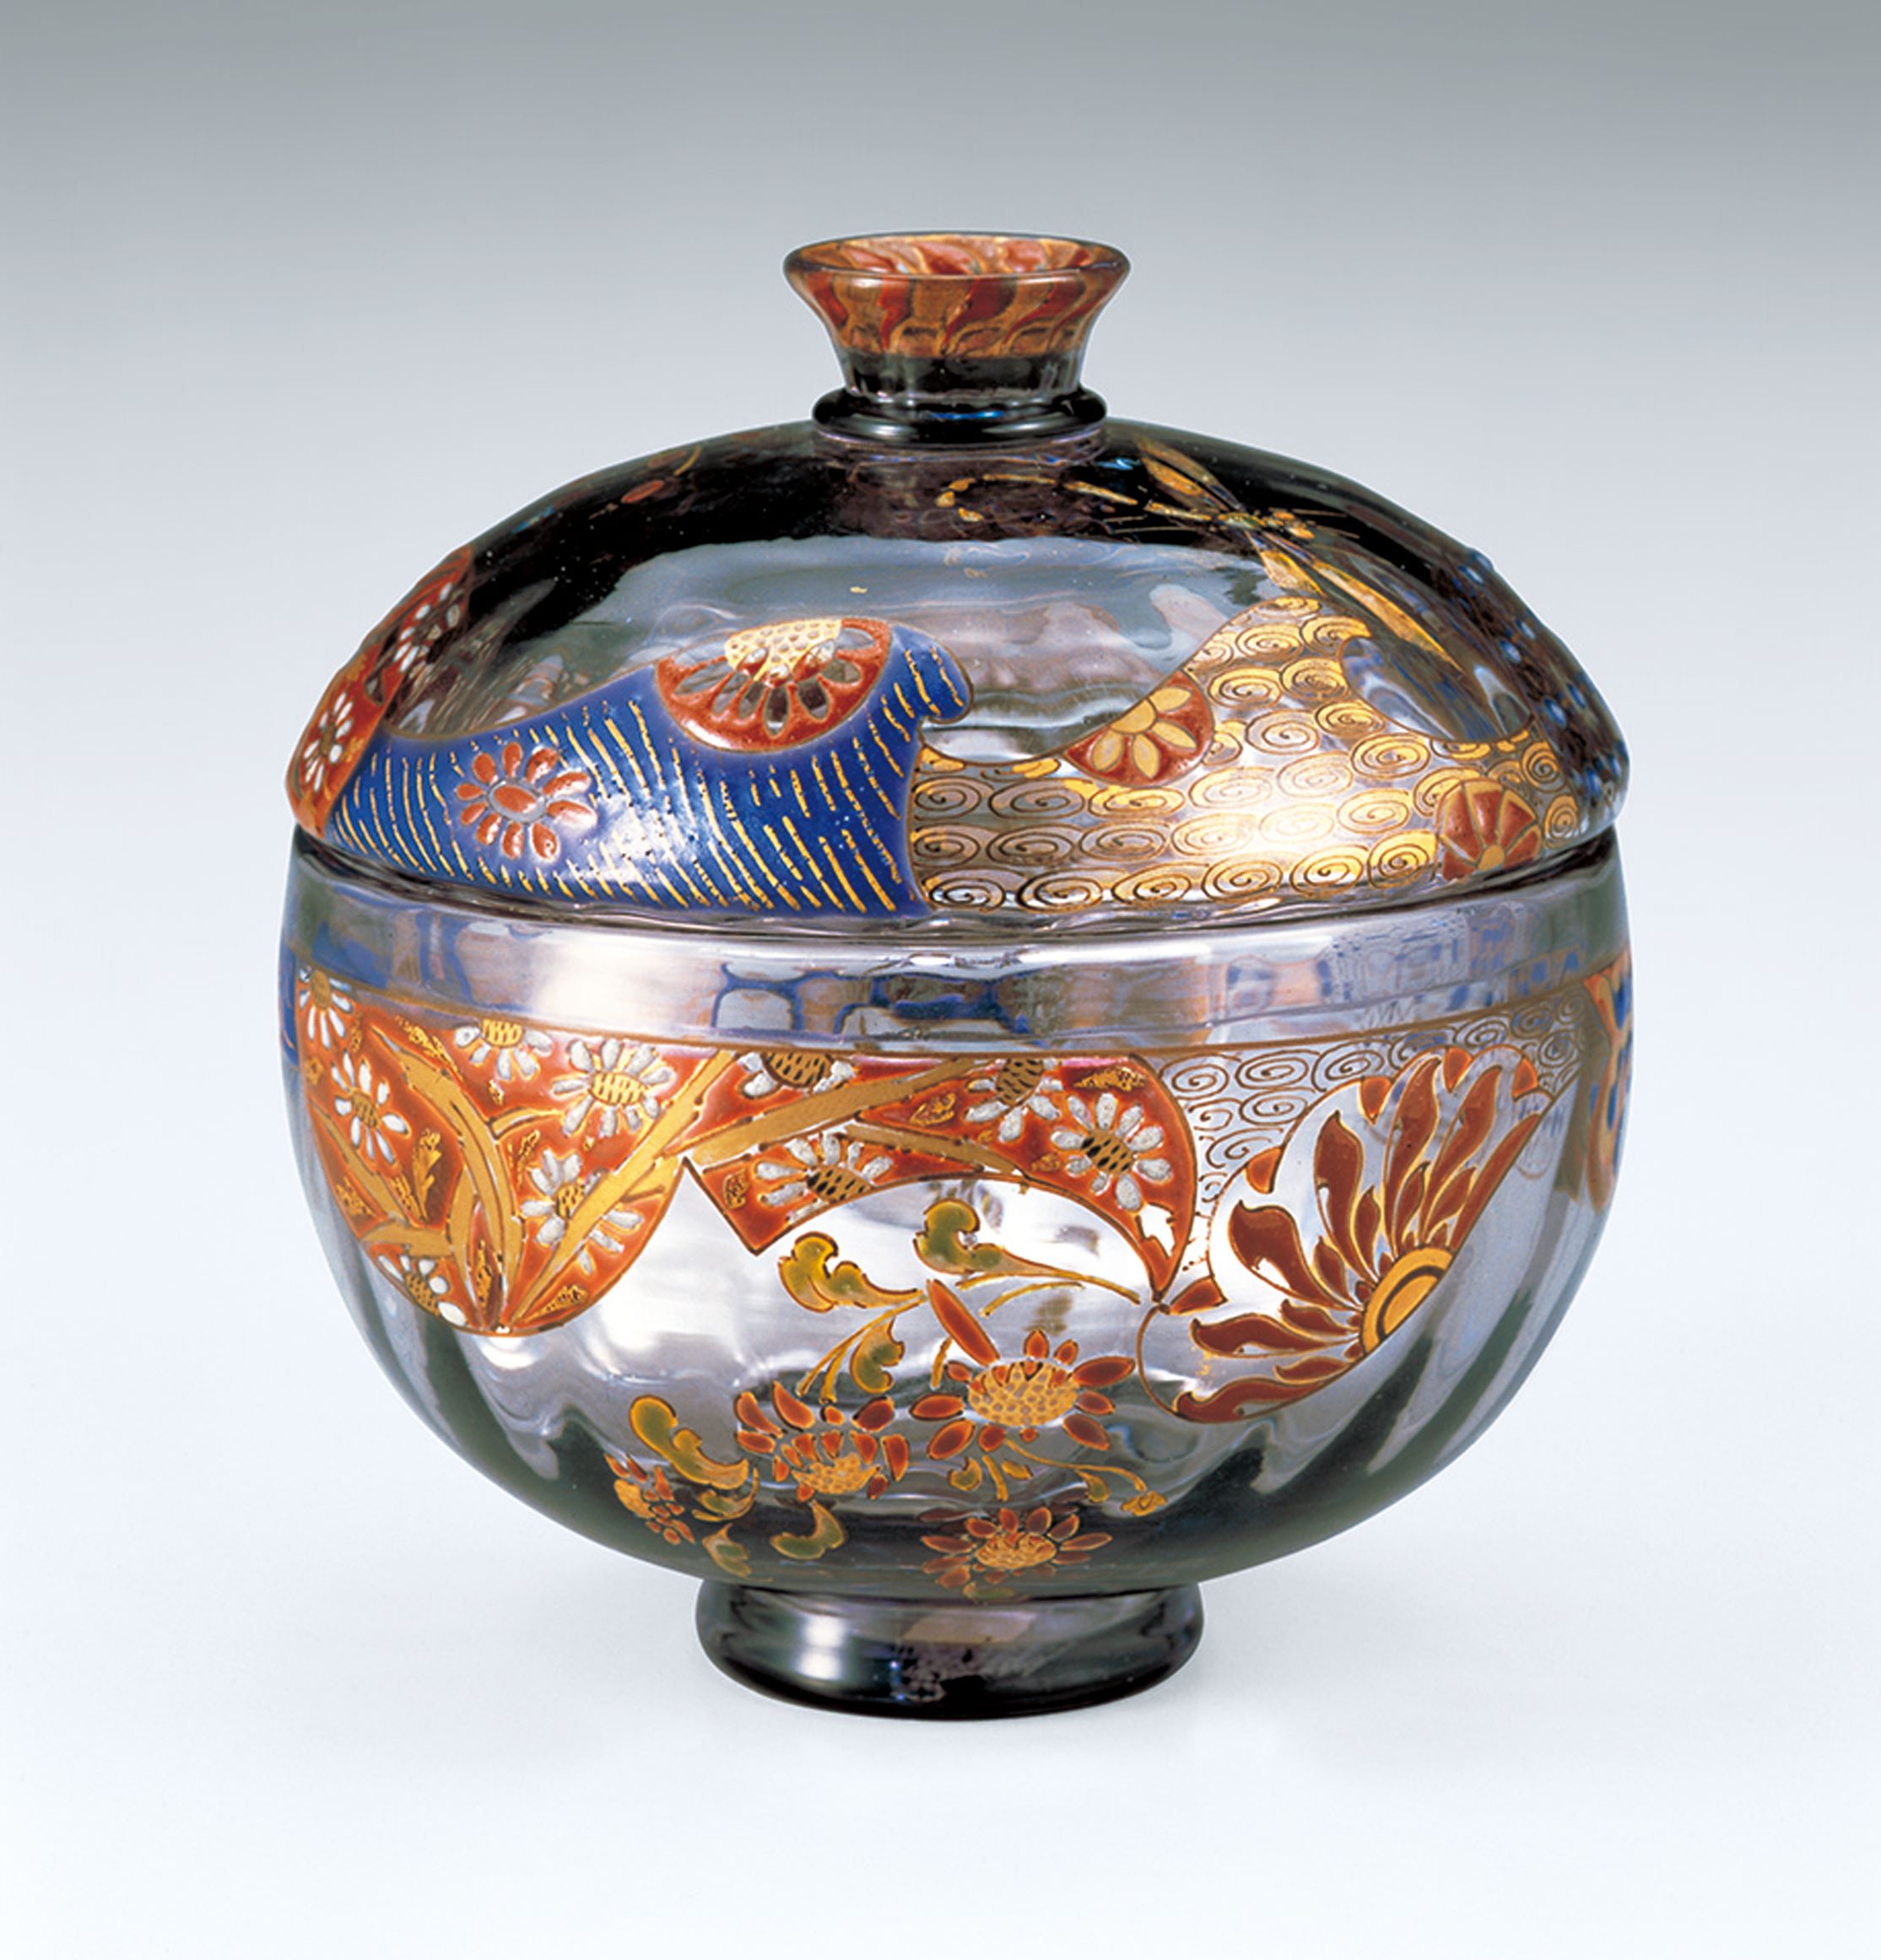 特価即納エミール・ガレ 1900年頃 希少作品 象嵌技法 美術館級 大型花瓶 花器 壺 ドーム 工芸ガラス